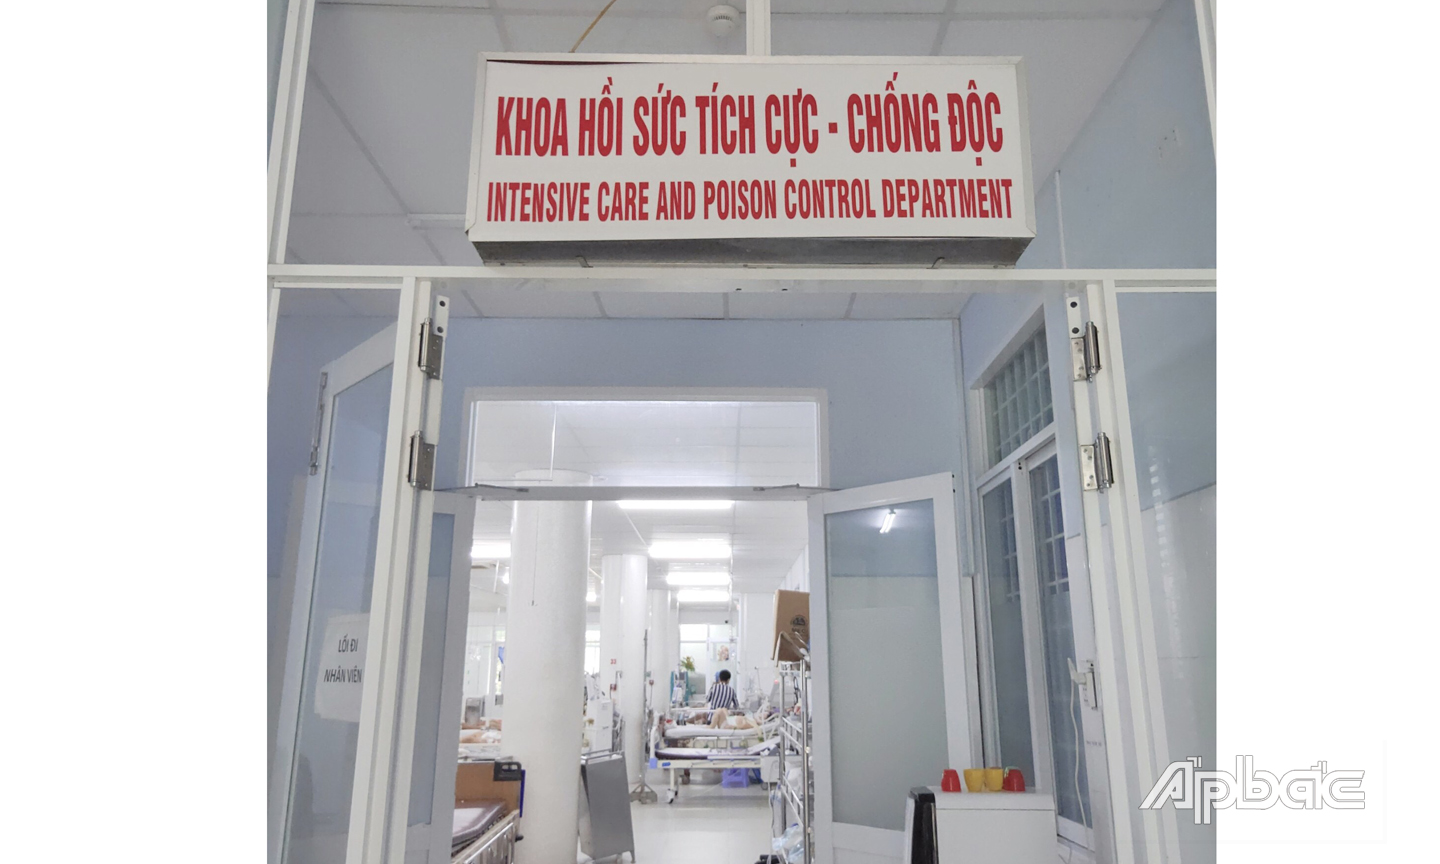 Cụ L. đang được các bác sĩ Bệnh viện đa khoa trung tâm Tiền Giang tích cực hồi sức, điều trị